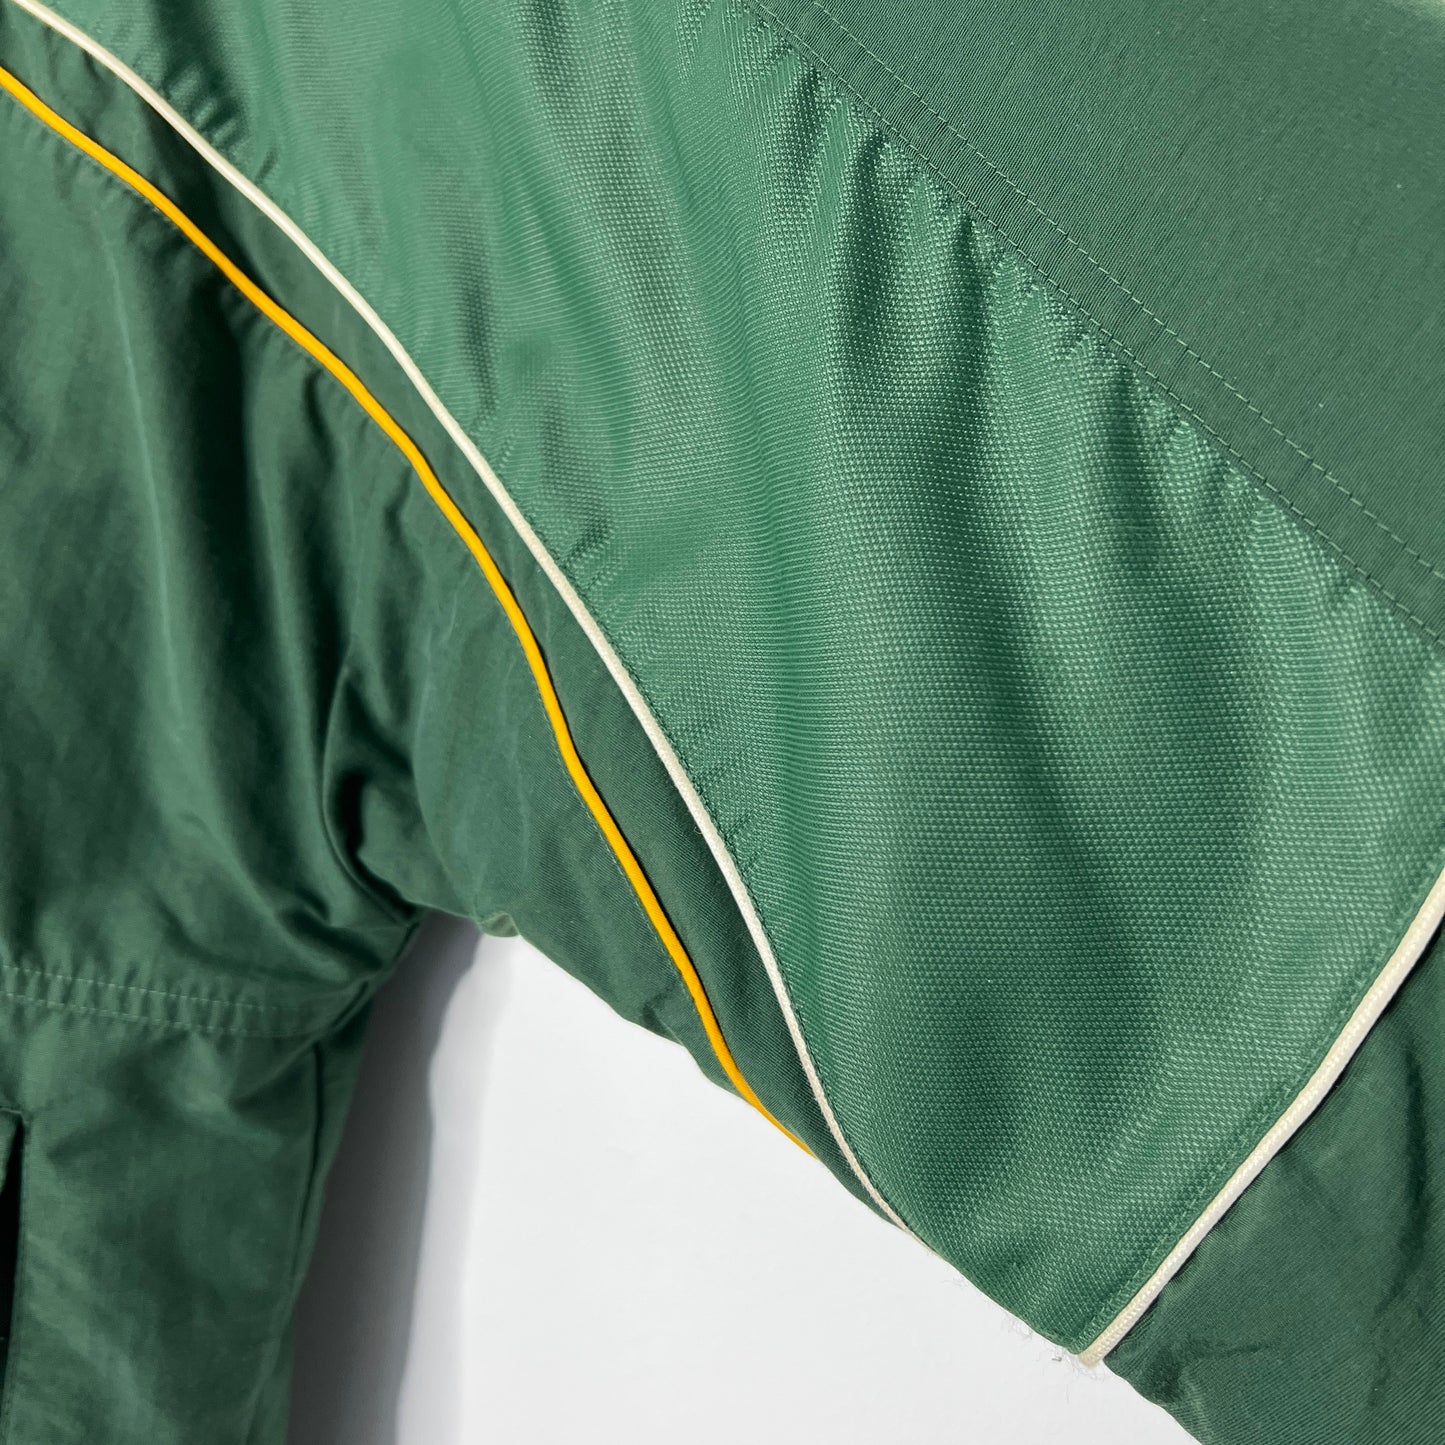 Vintage Nike Green Bay Packers Jacket